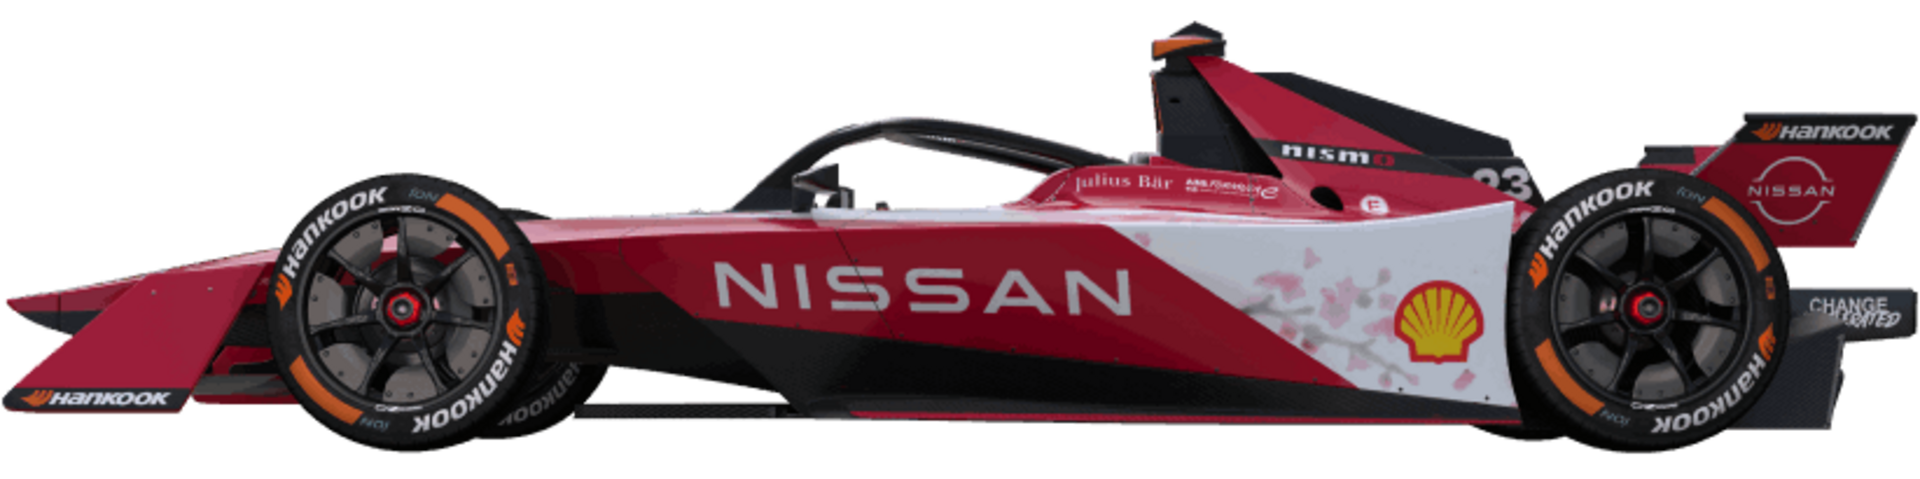 Nissan Formula E Team